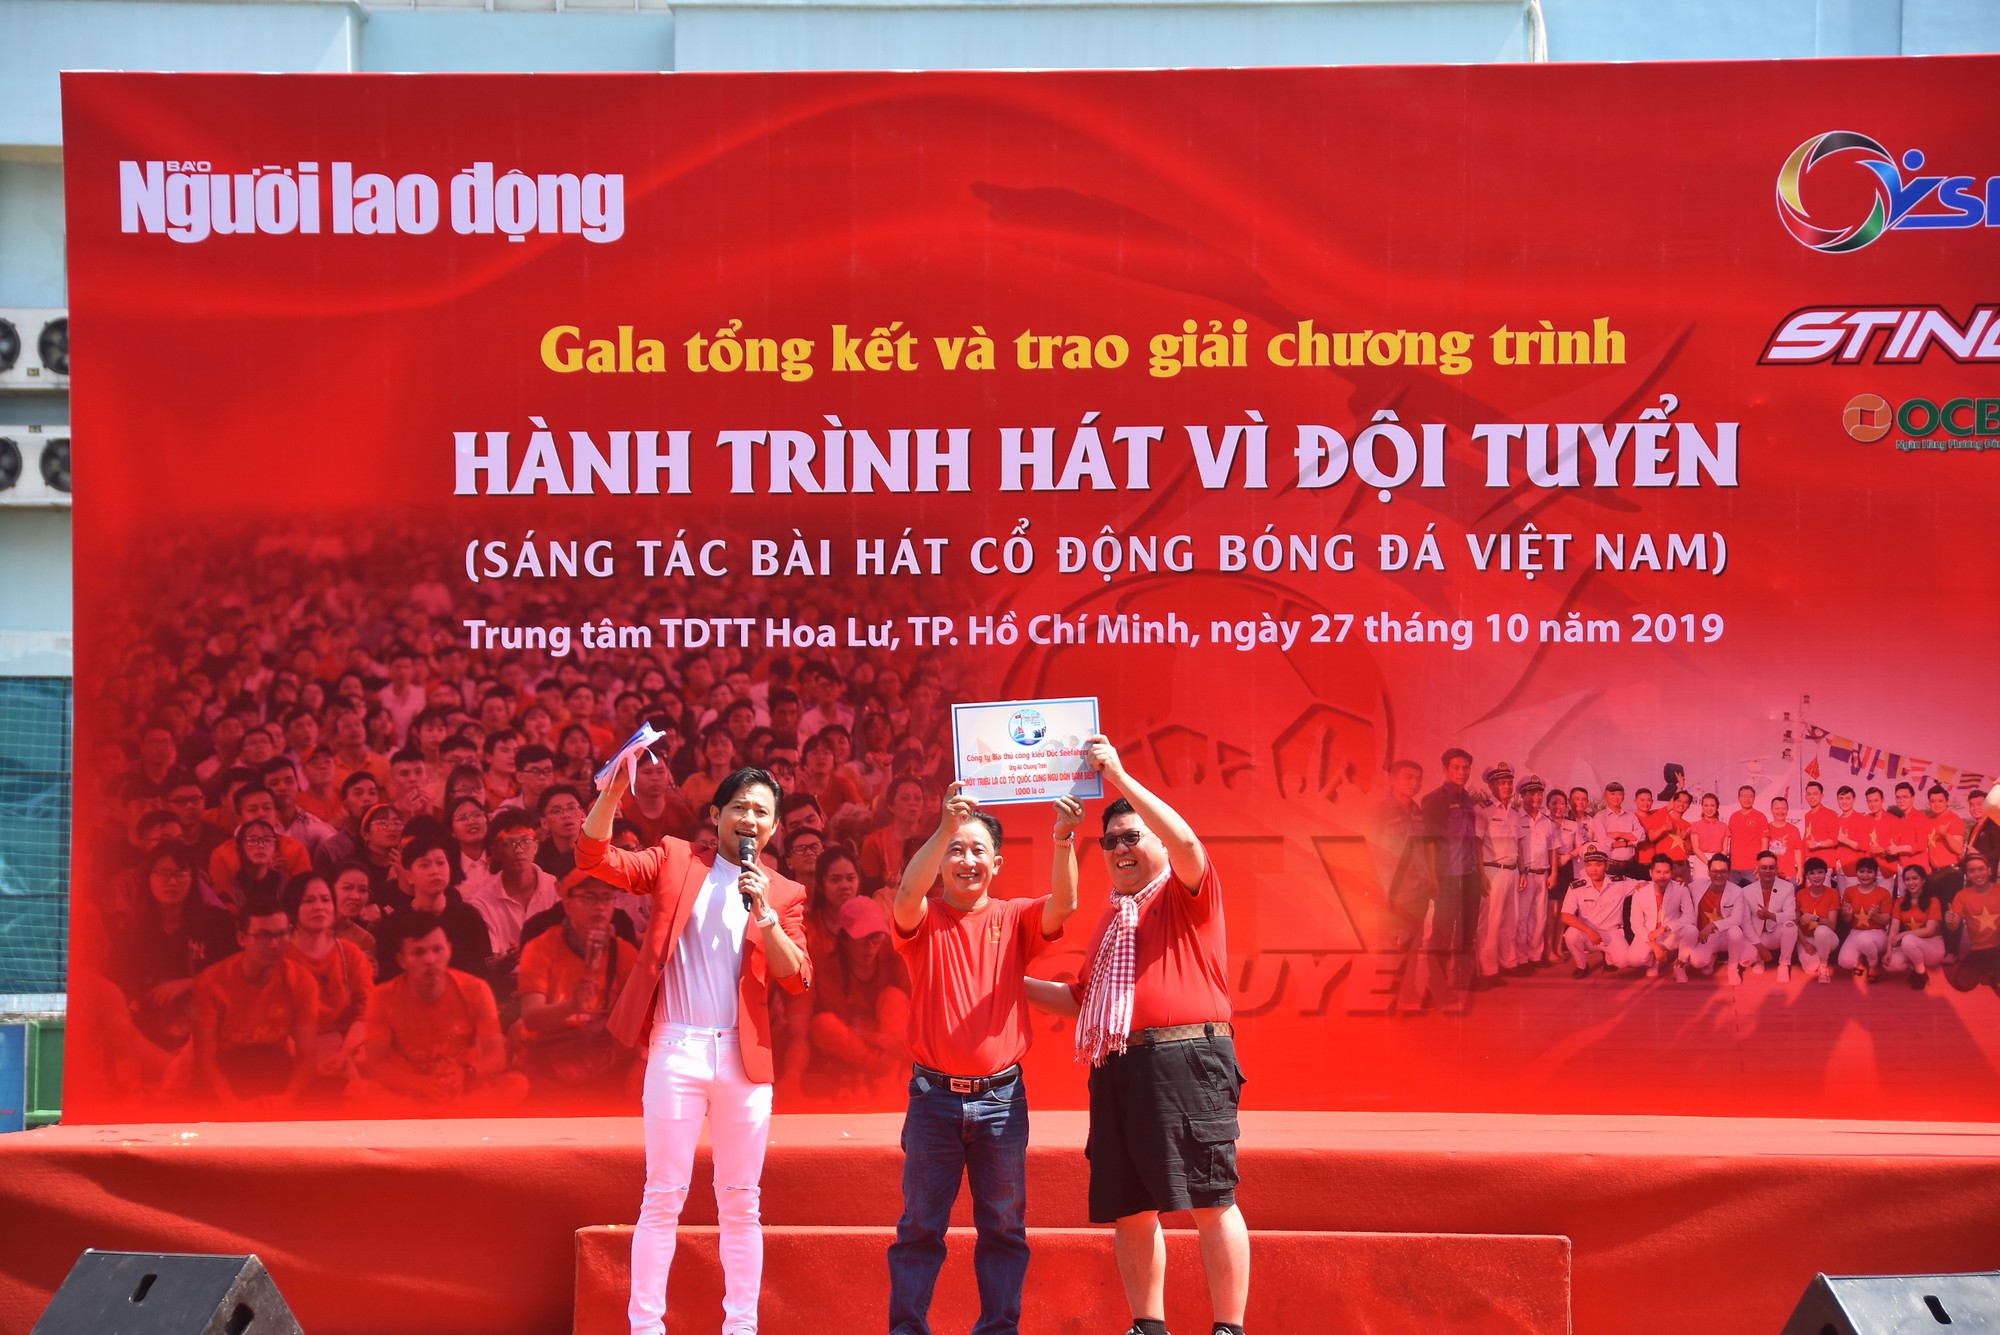 Cầu thủ Tuấn Anh xé niêm phong, công bố nhạc sĩ Võ Thiện Thanh ôm giải 300 triệu đồng - Ảnh 18.